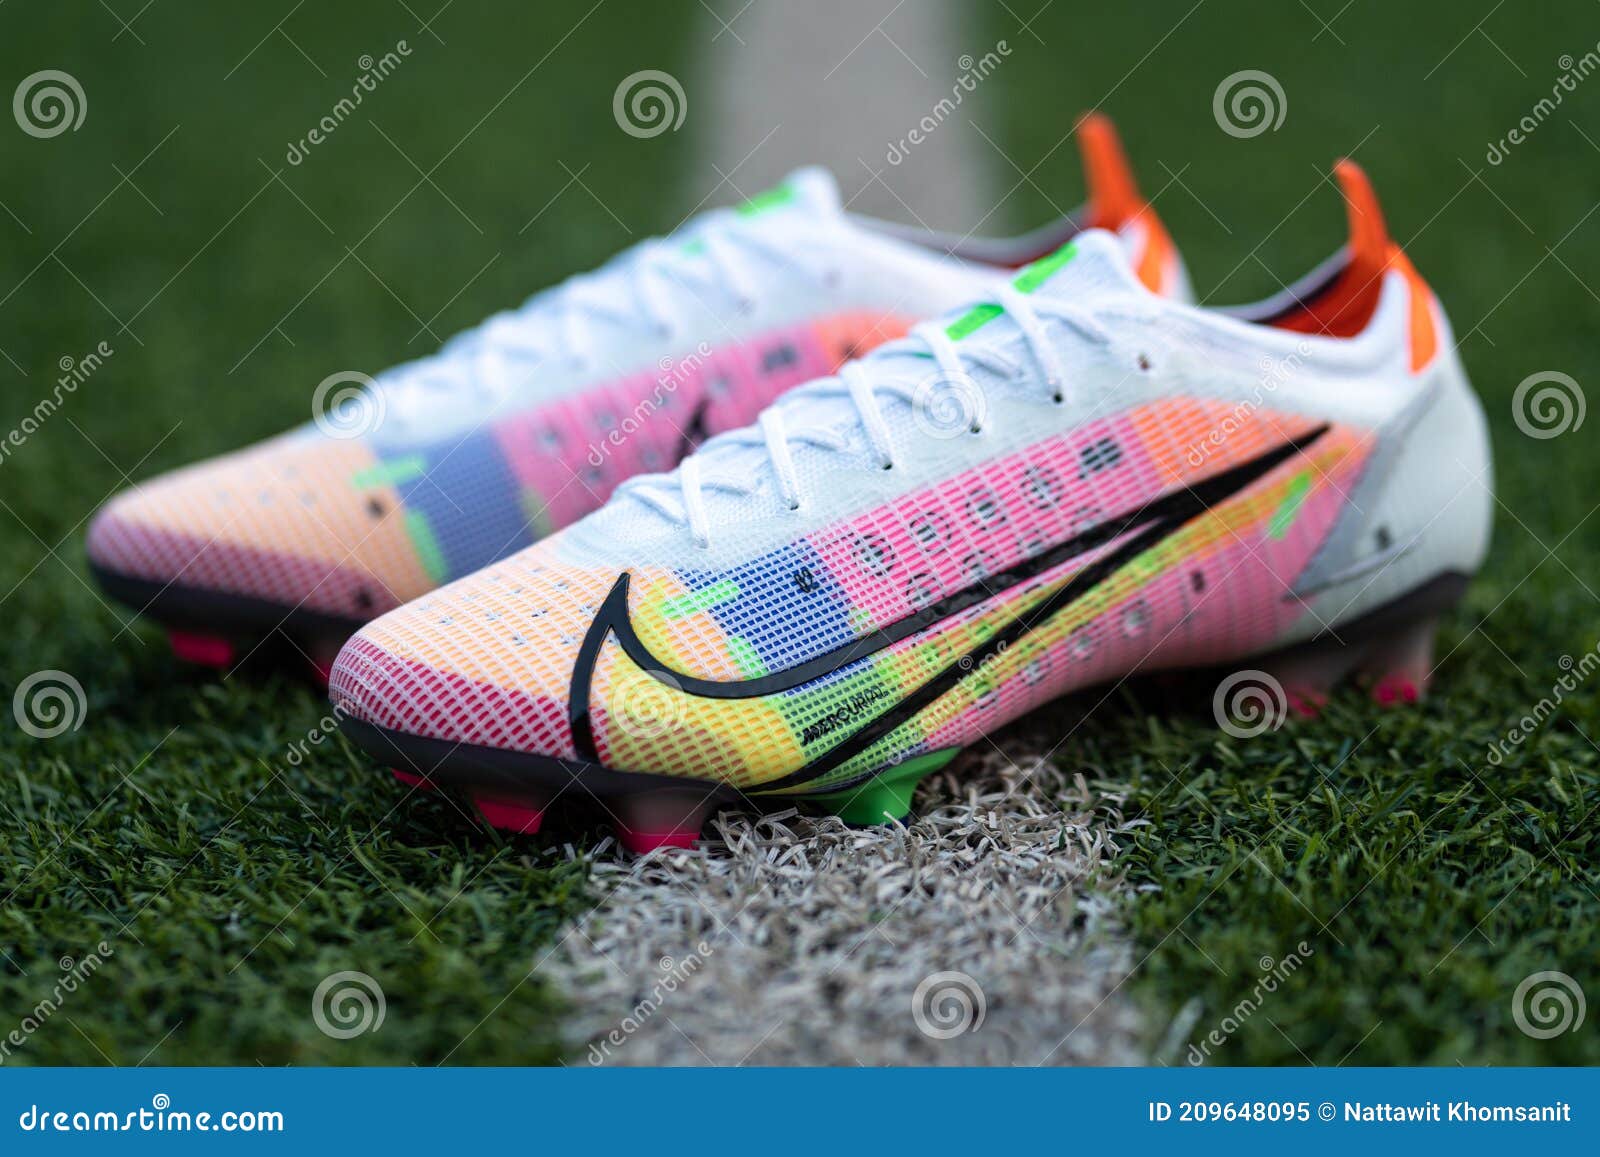 peso coger un resfriado en cualquier sitio Nike Mercurial Vapor 14 Nuevo Zapato De Futbol Nike. Imagen editorial -  Imagen de objeto, lanzamiento: 209648095